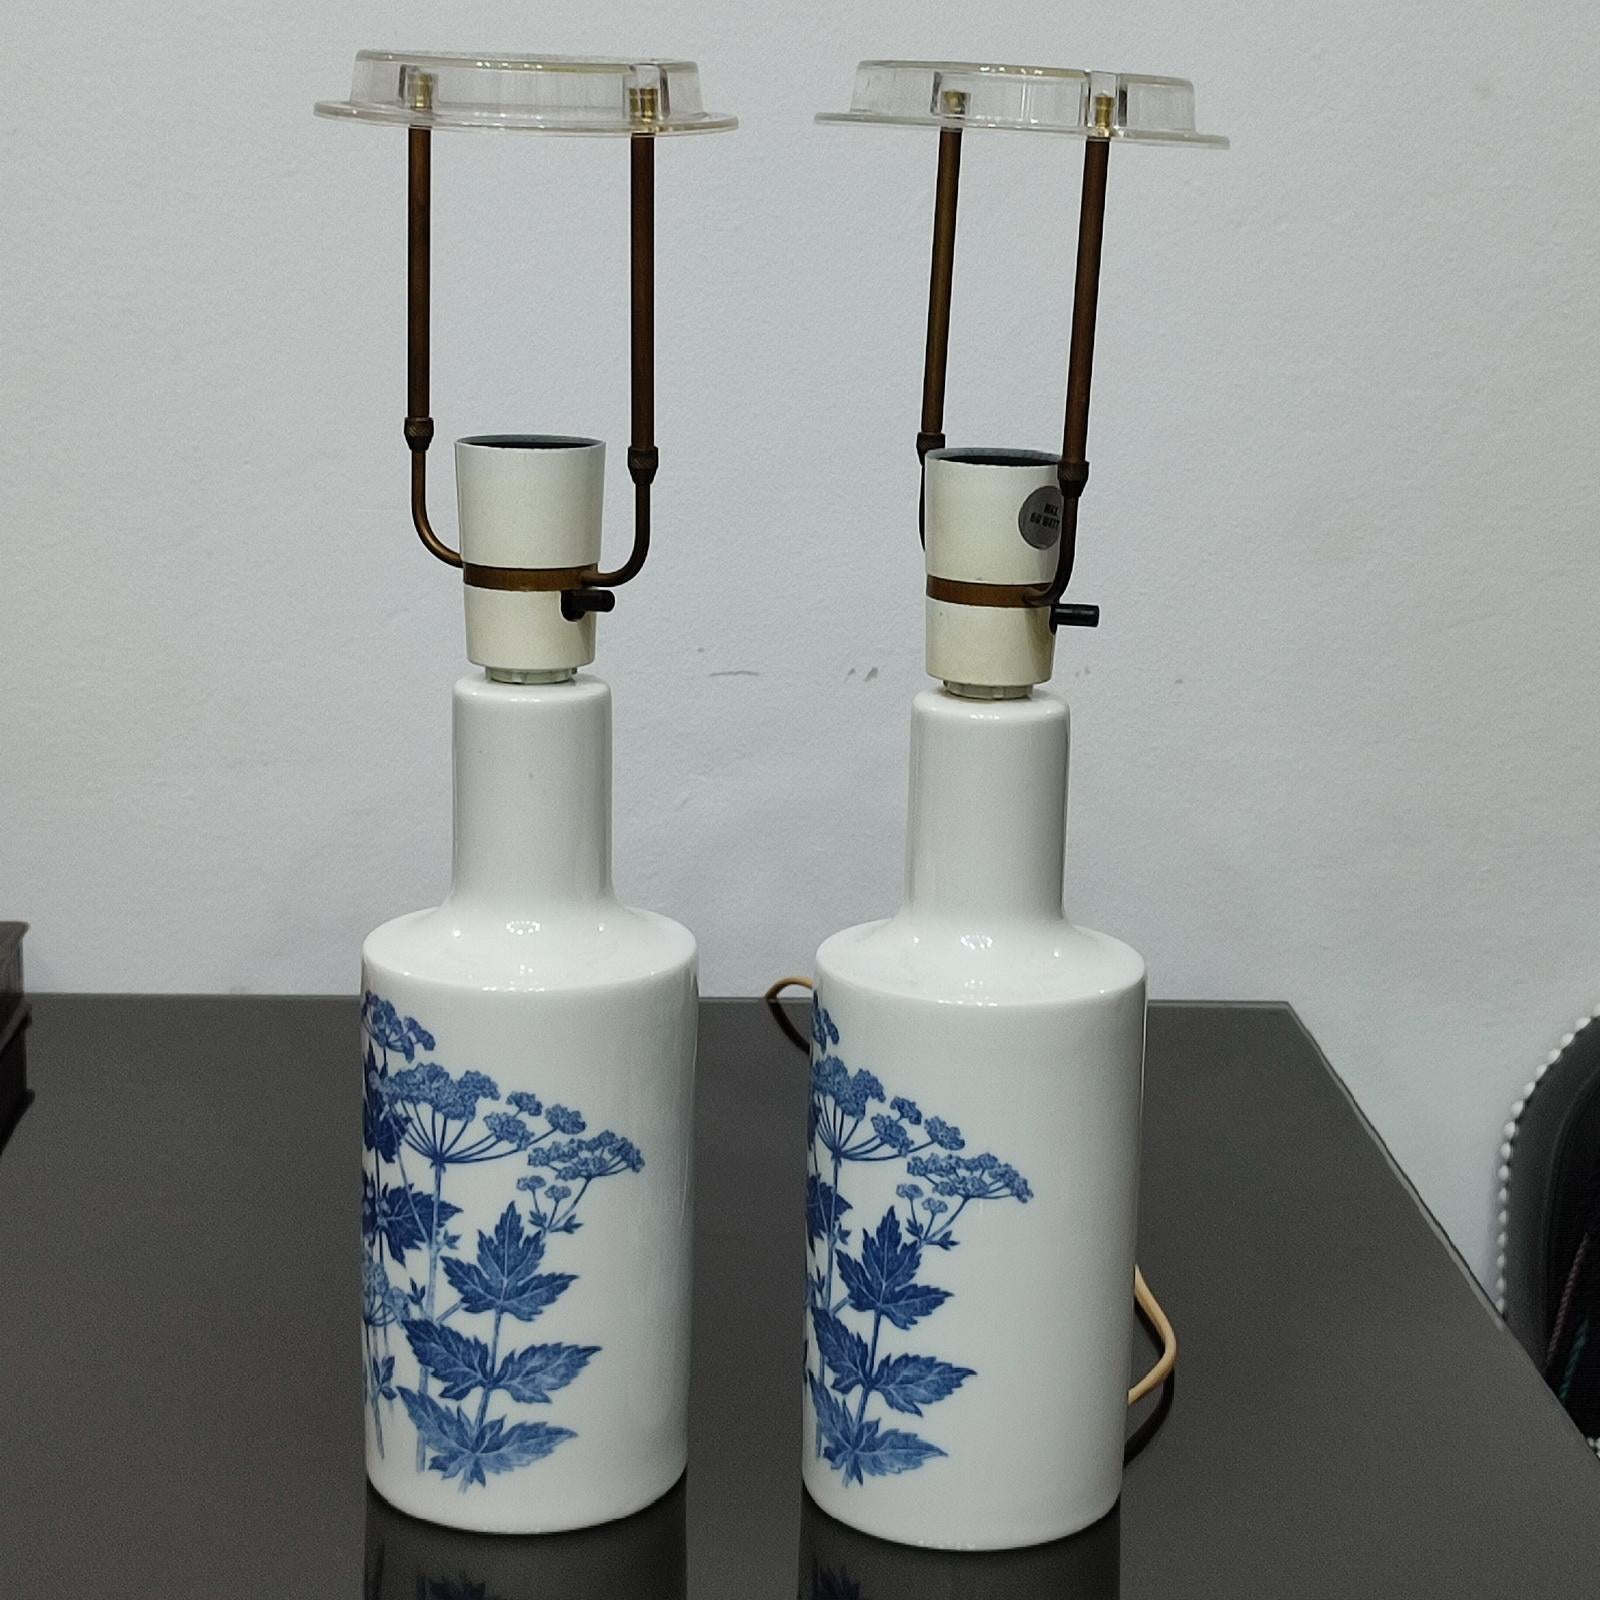 Pair of Porcelain Table Lamps by Fog & Morup for Royal Copenhagen, Denmark 1960s For Sale 3